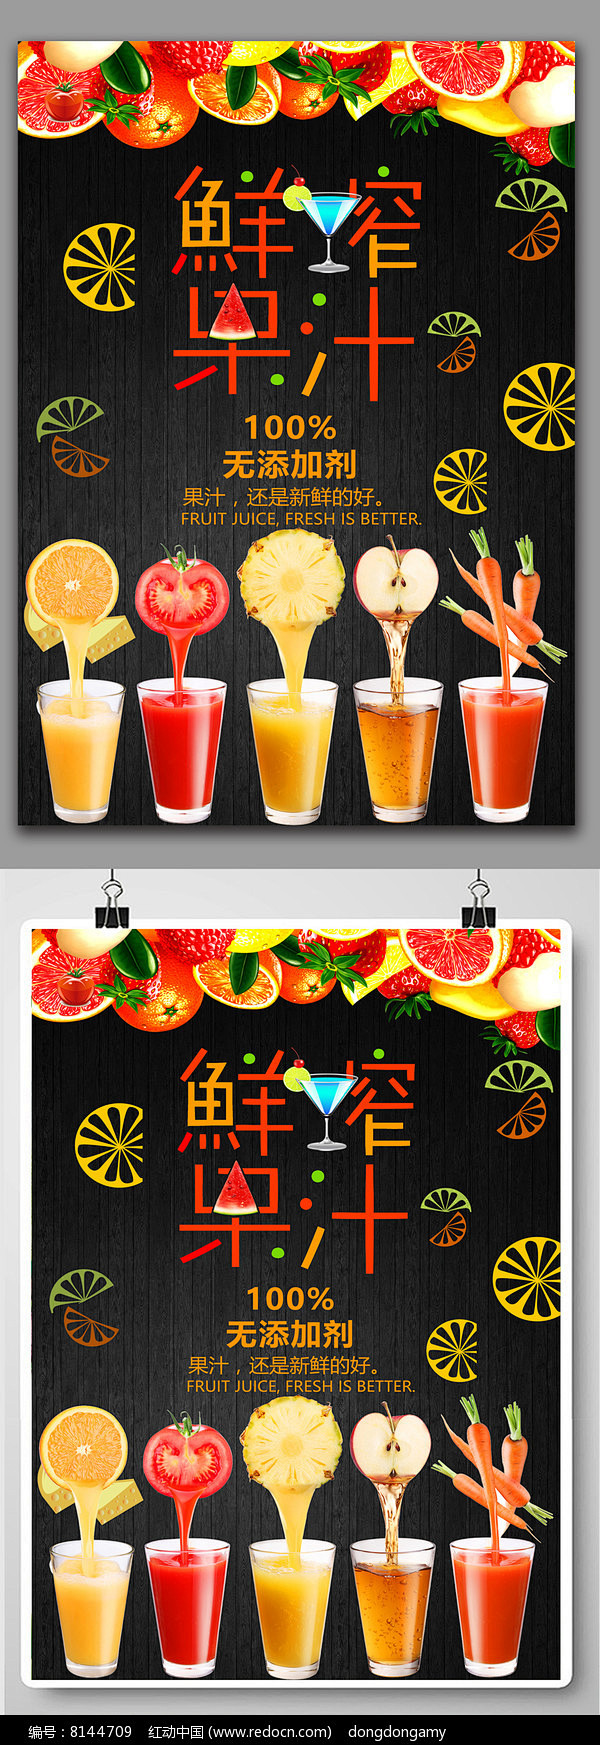 鲜榨果汁 饮料宣传海报 果汁 水果汁海报...